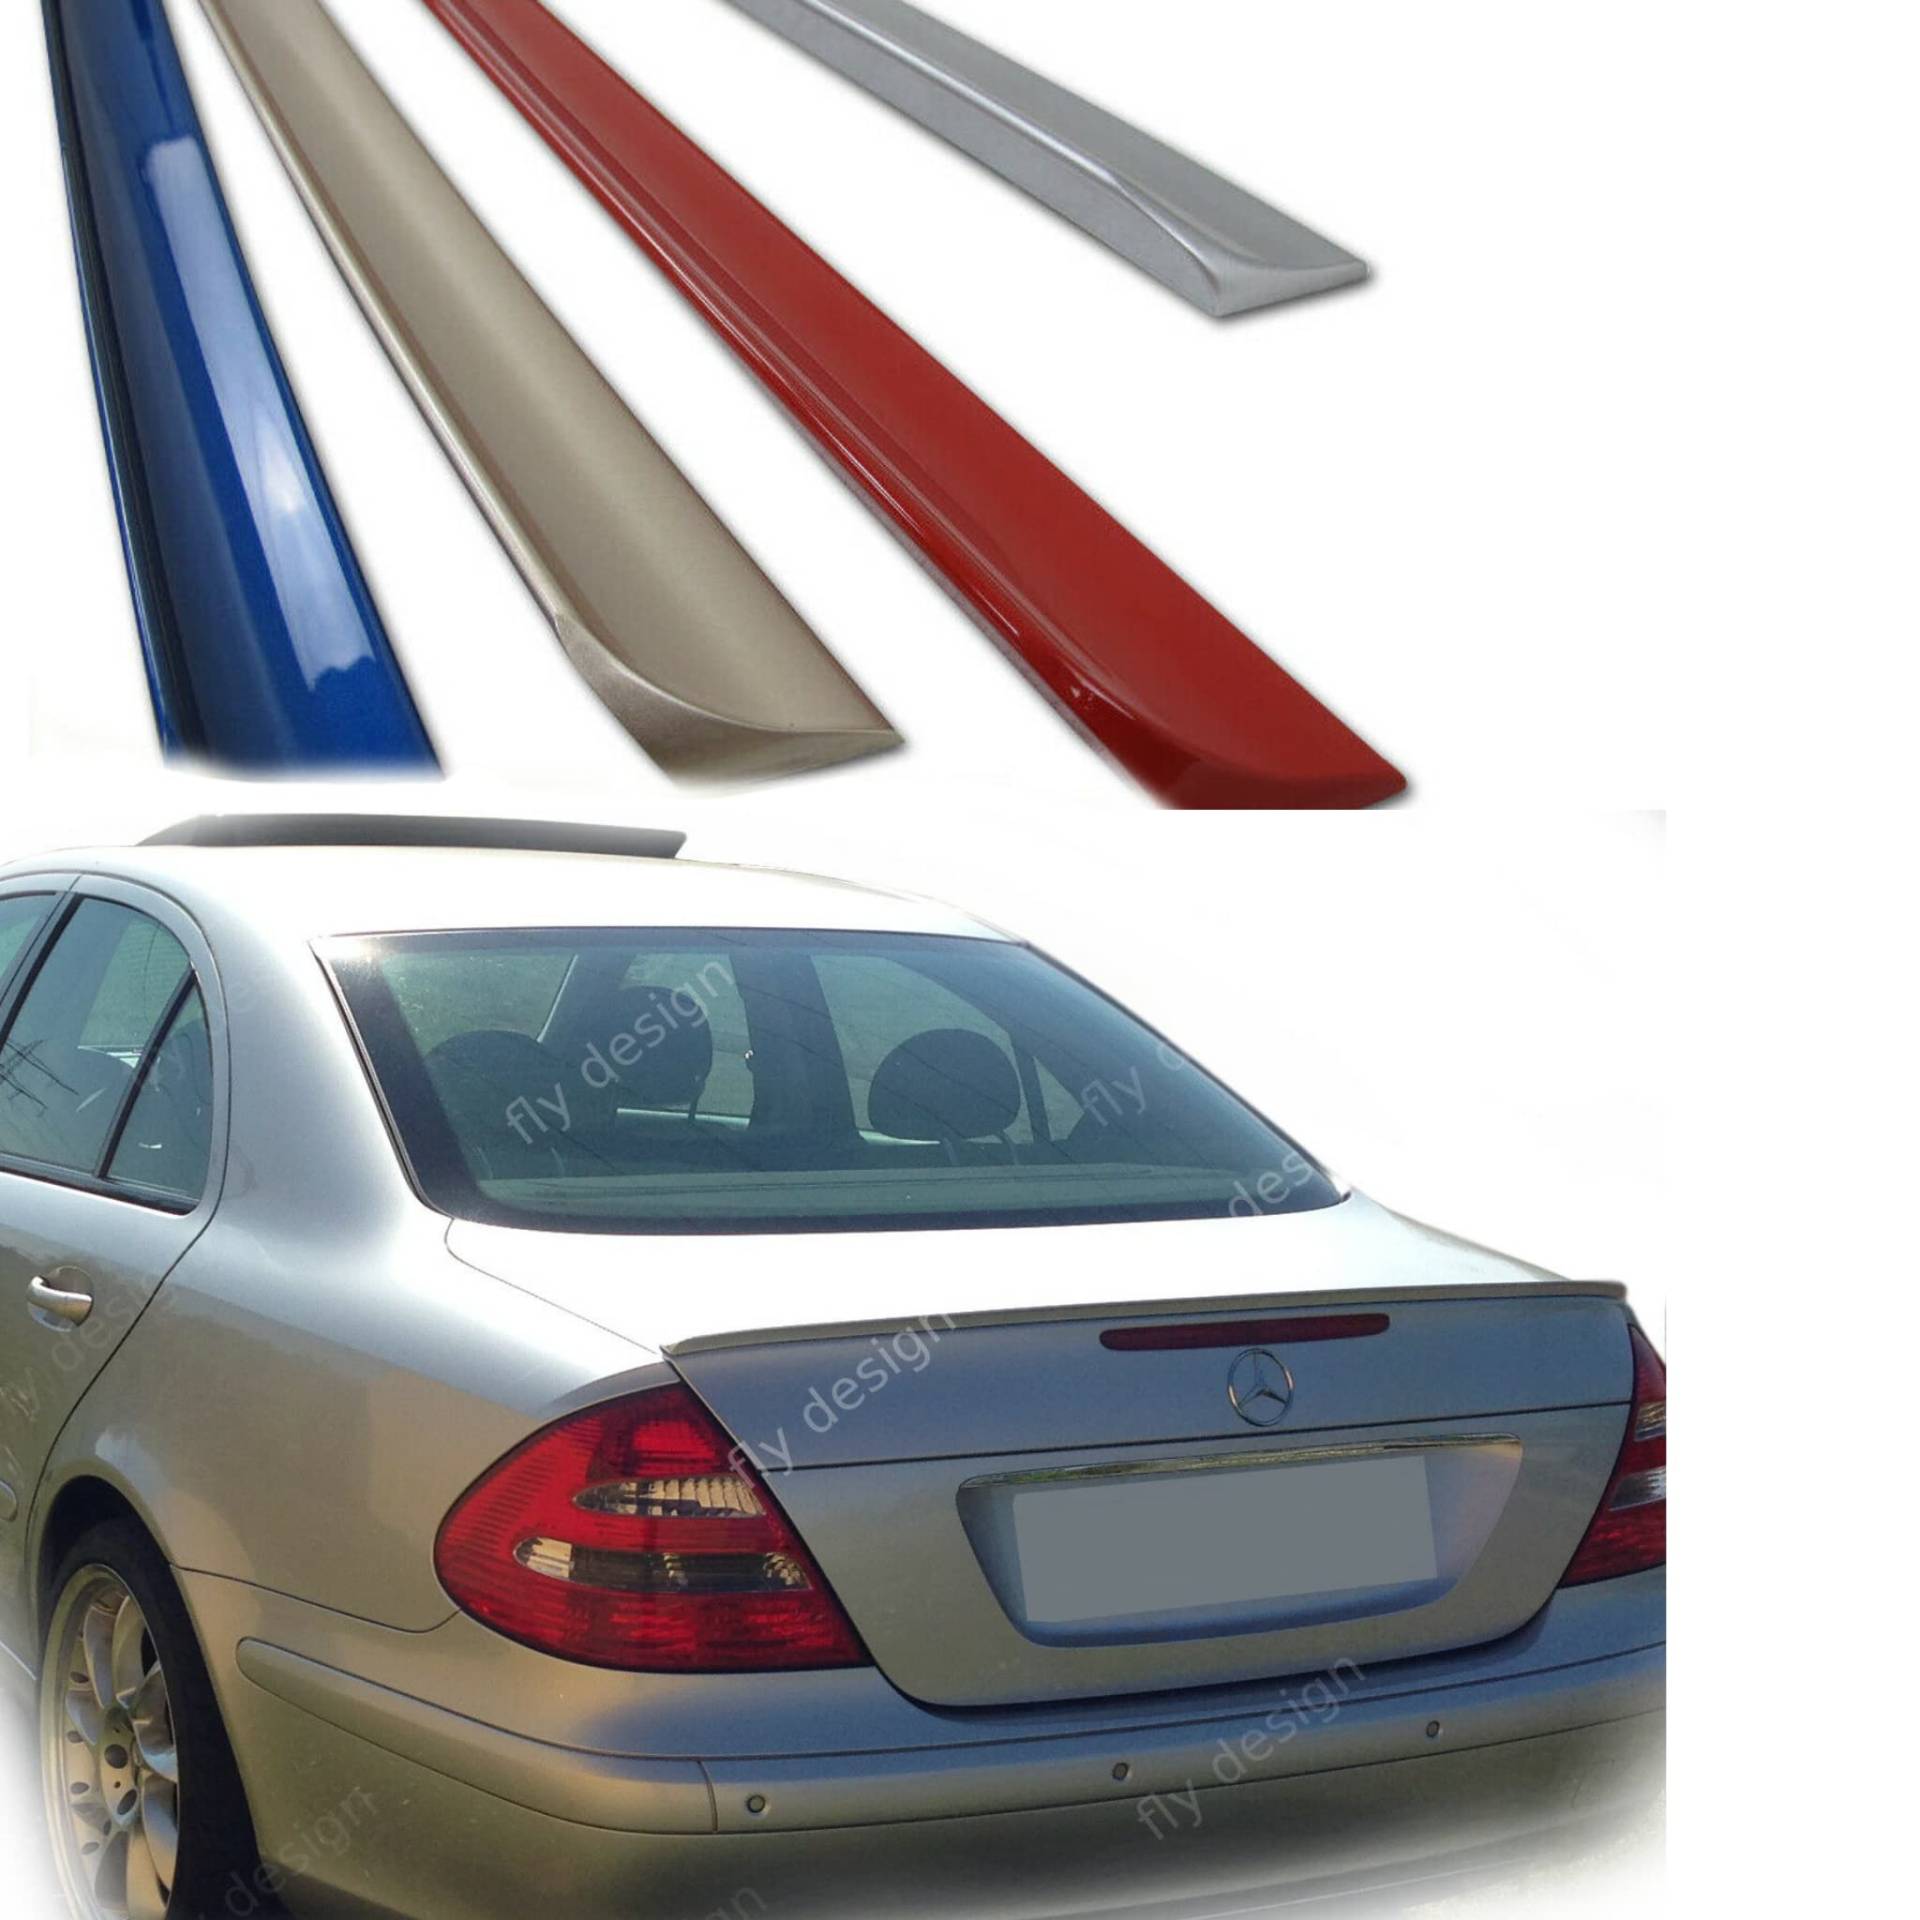 Heckspoiler, Hecklippe, Spoiler passend für Mercedes E-KLASSE W211 , flexibel, leicht, waschanlagenfest, viele verfügbare Farben (Tansanitblau Met. (CC 359)) von FLY DESIGN